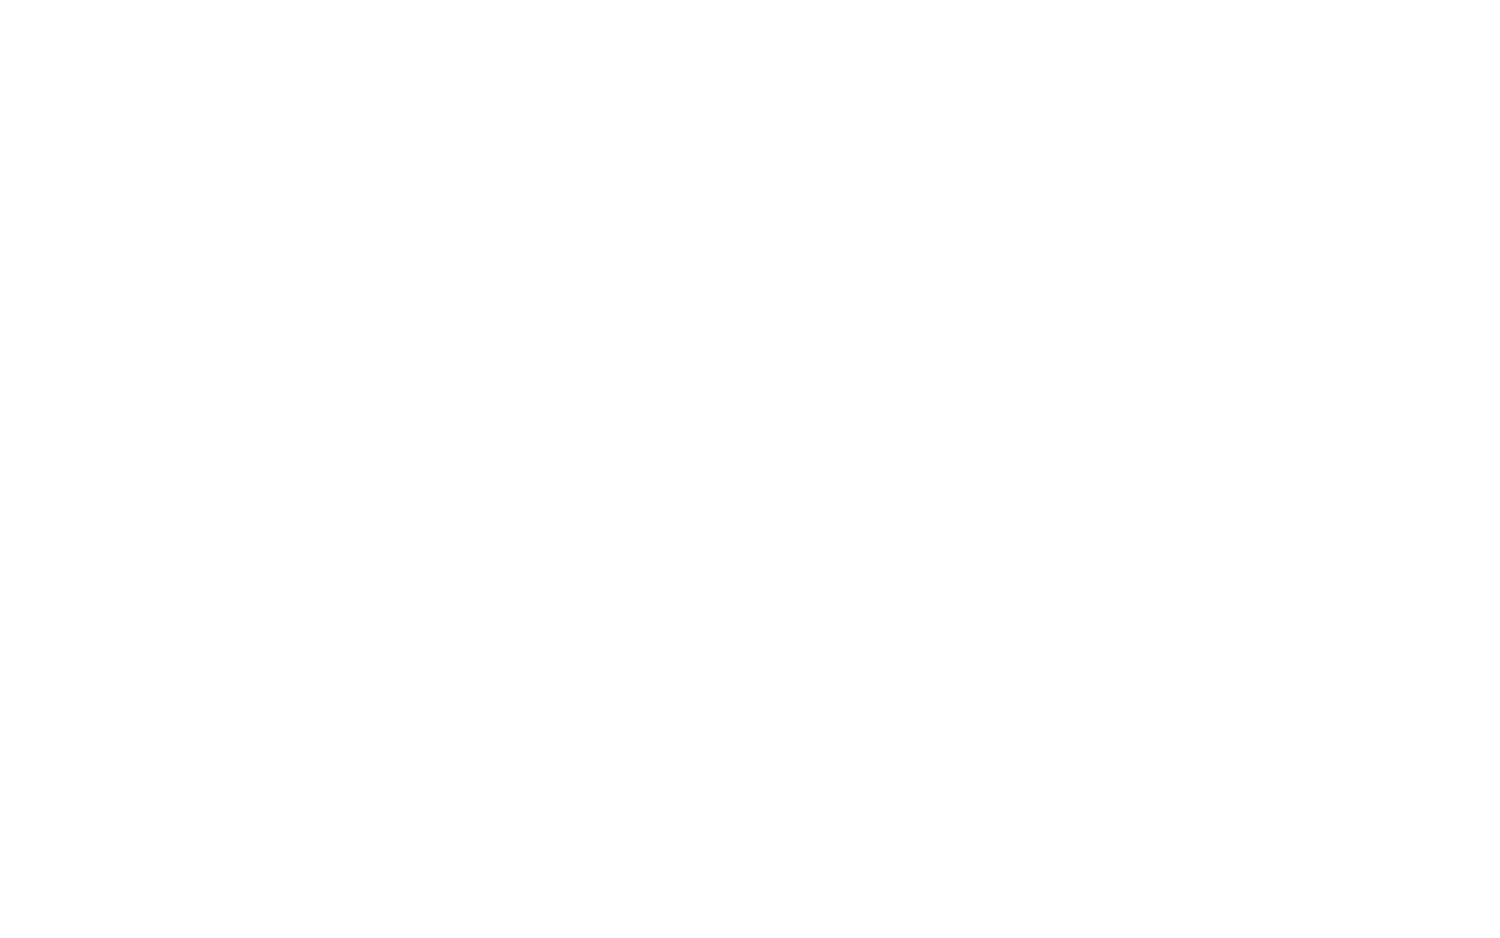 Vert Design Studio